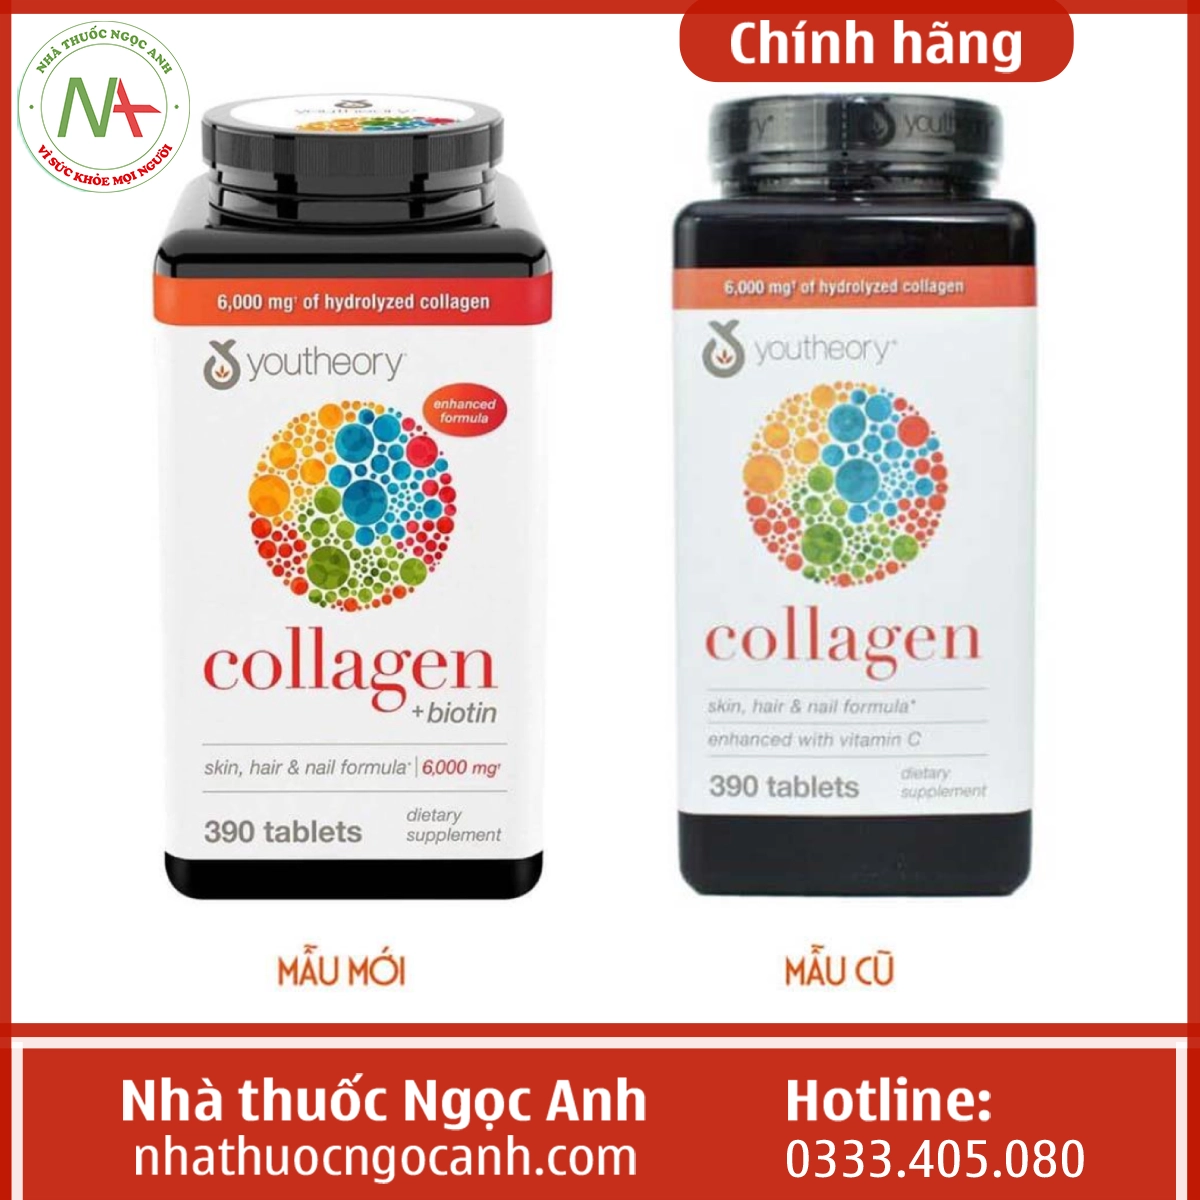 Lọ Collagen + Biotin Youtheory mẫu mới và cũ